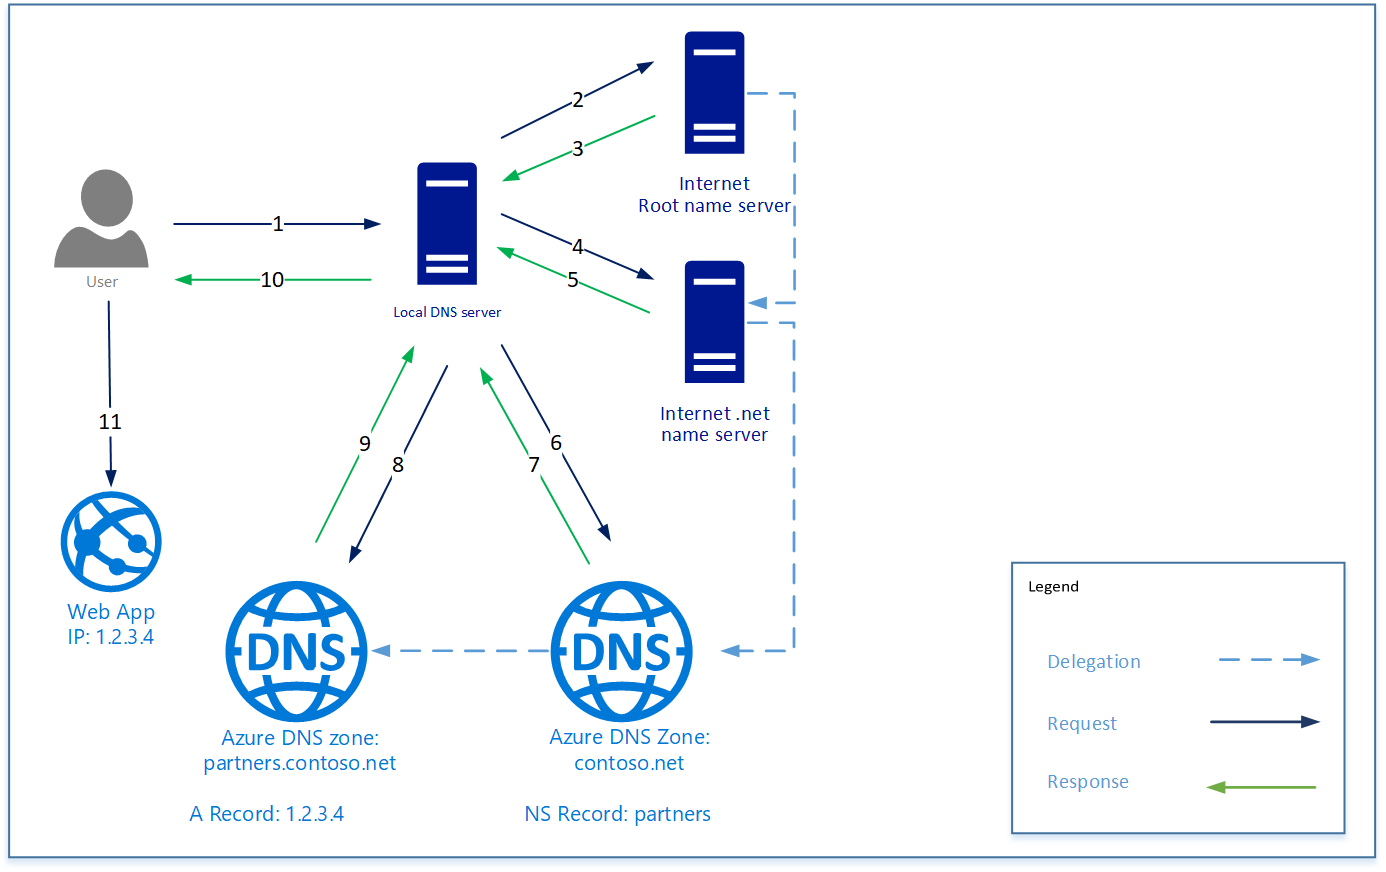 Koncepční diagram znázorňující funkci nízkého delegování DNS